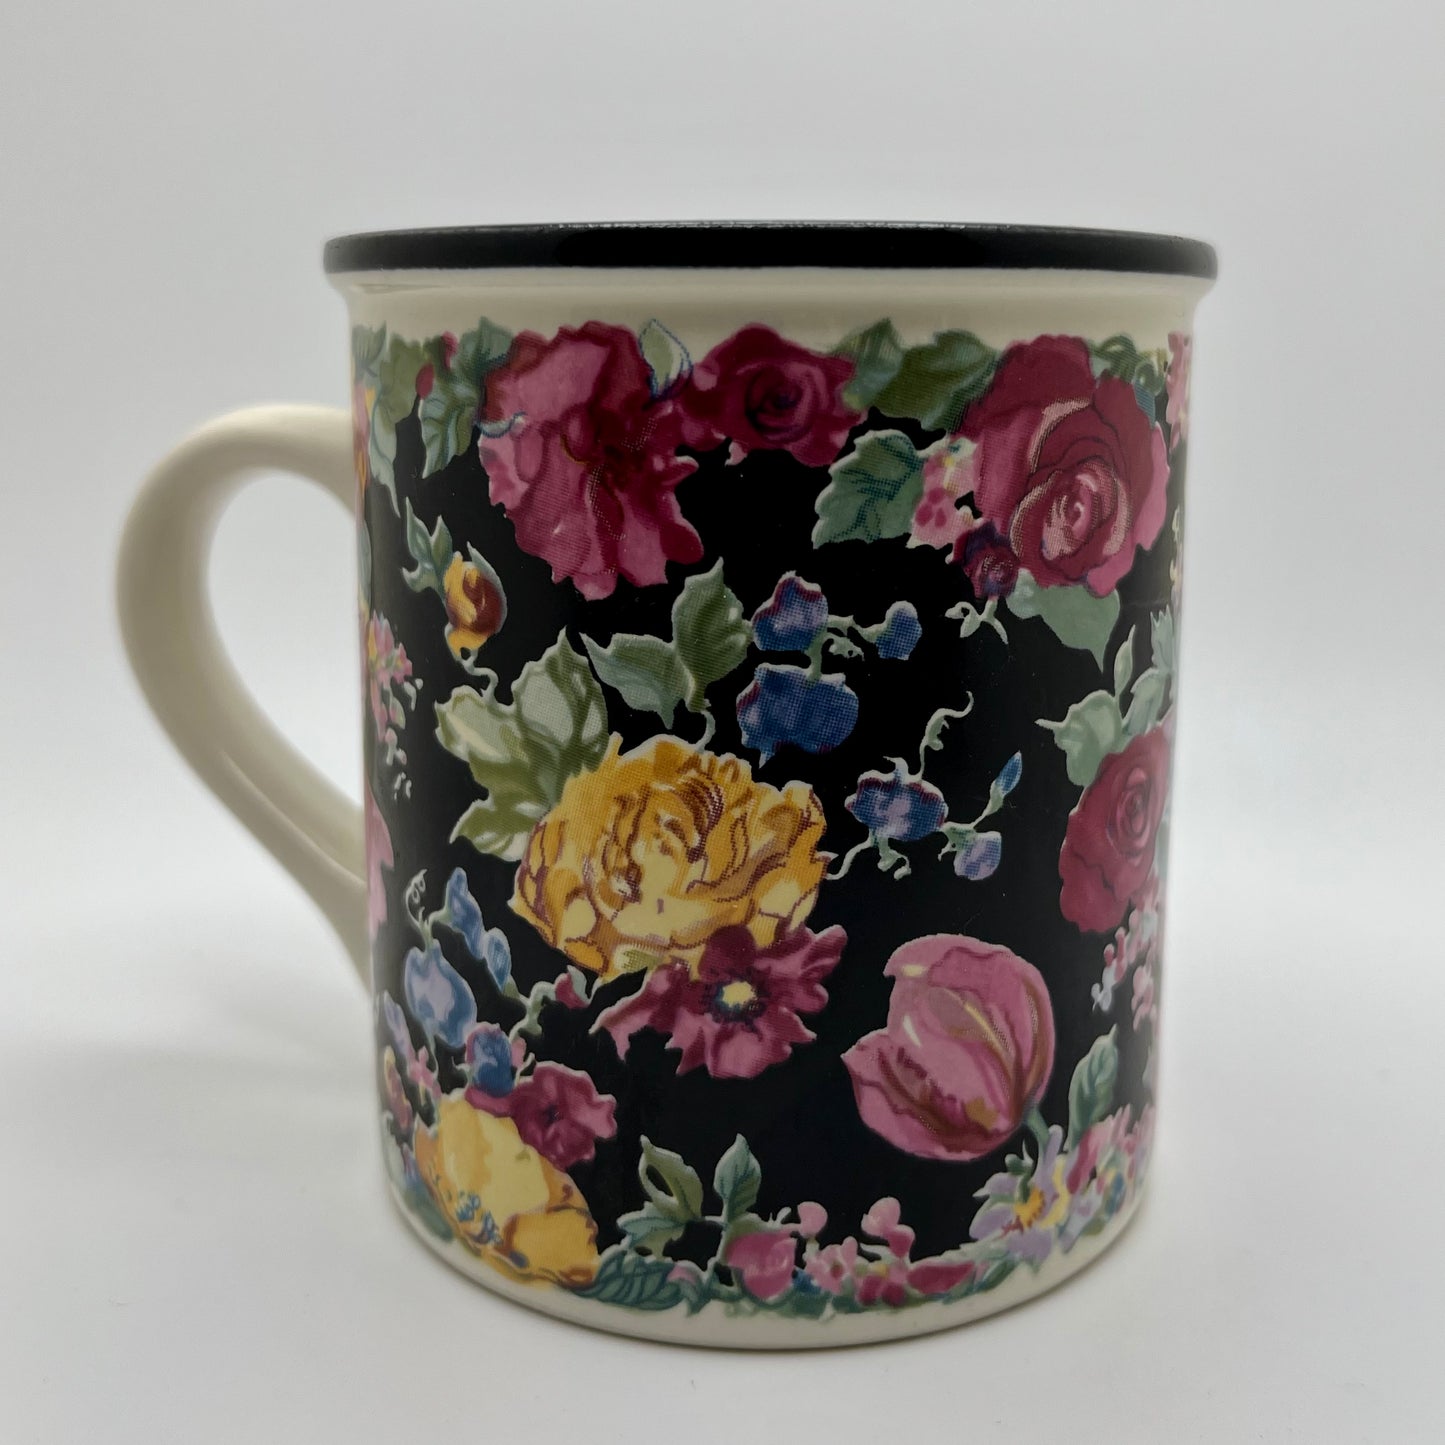 Jasmine Scented Floral Mug